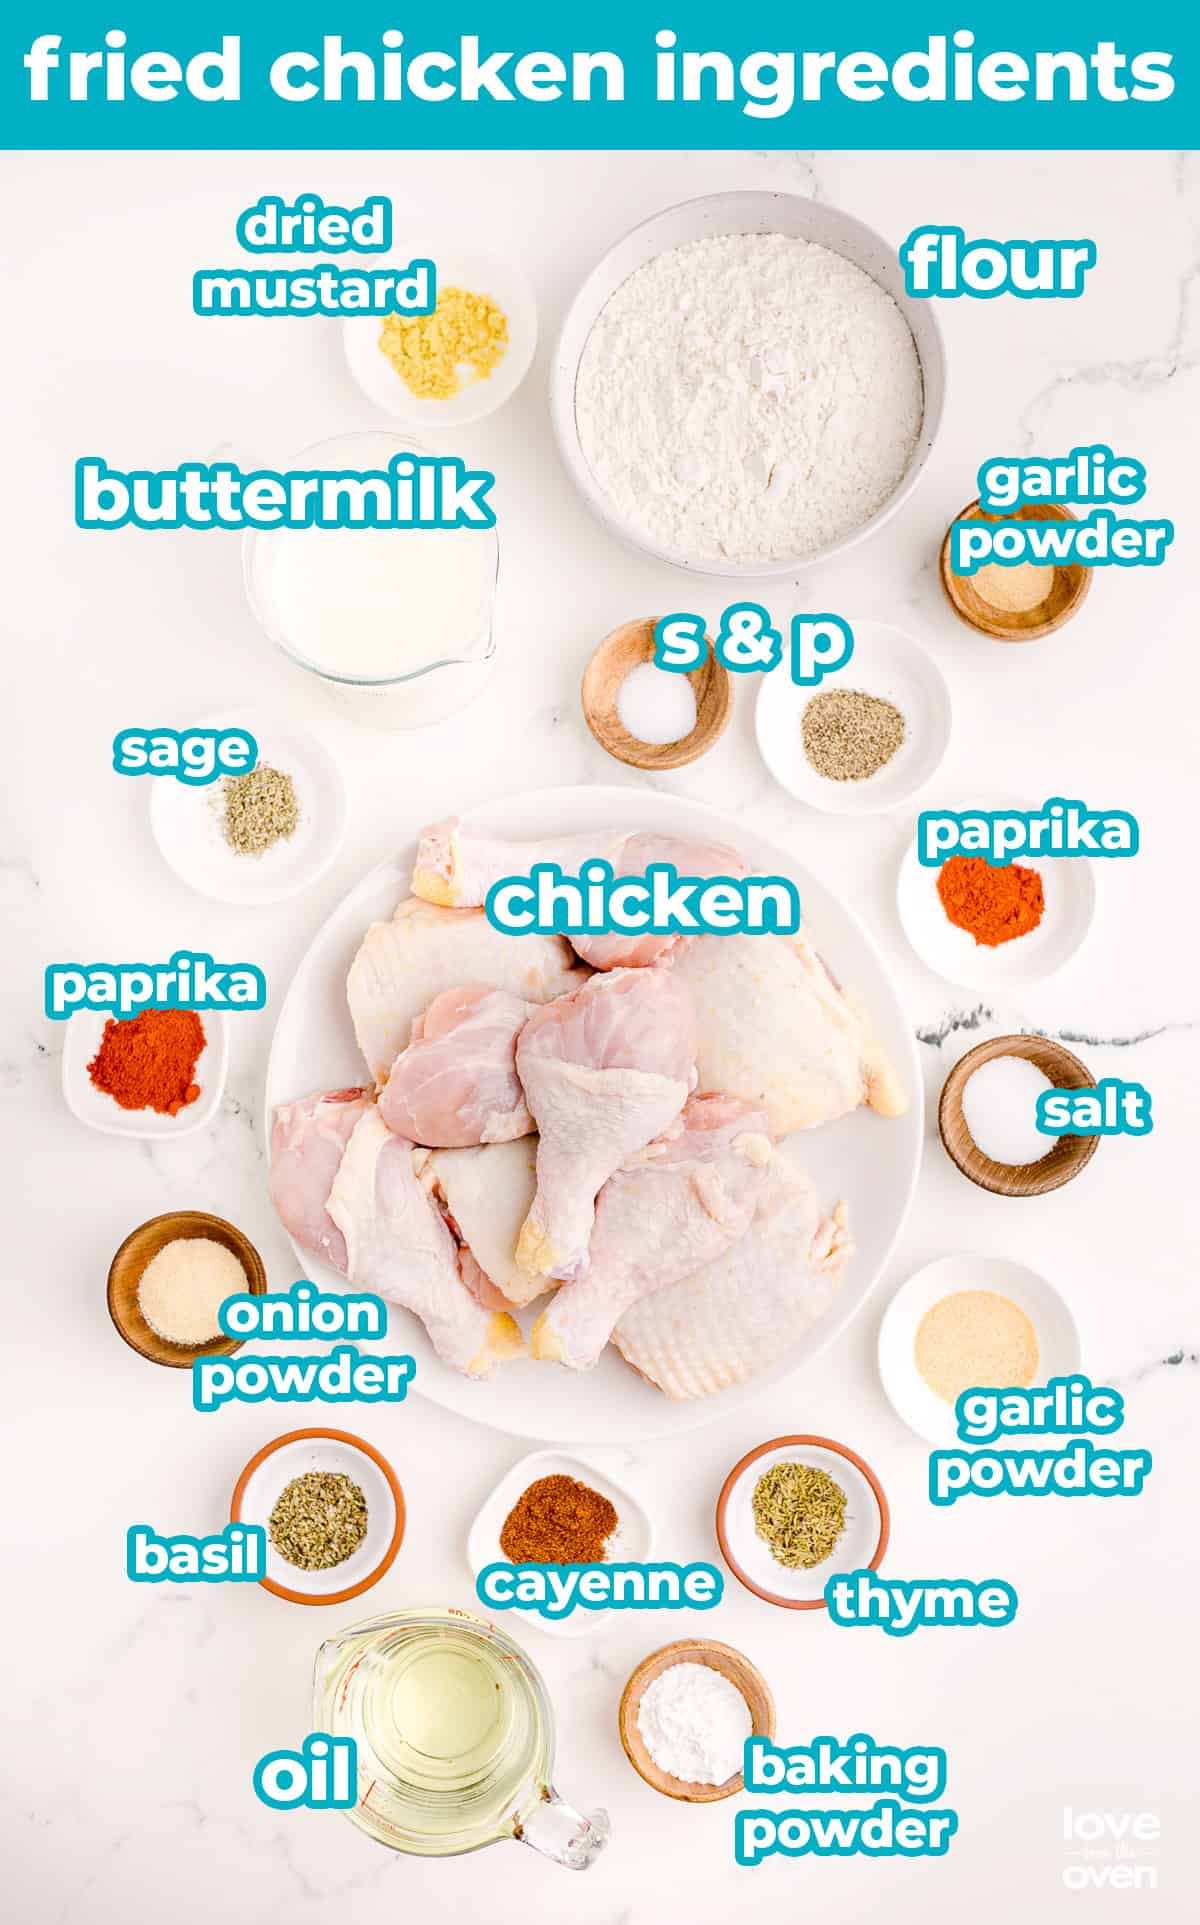 Buttermilk Fried Chicken | LaptrinhX / News